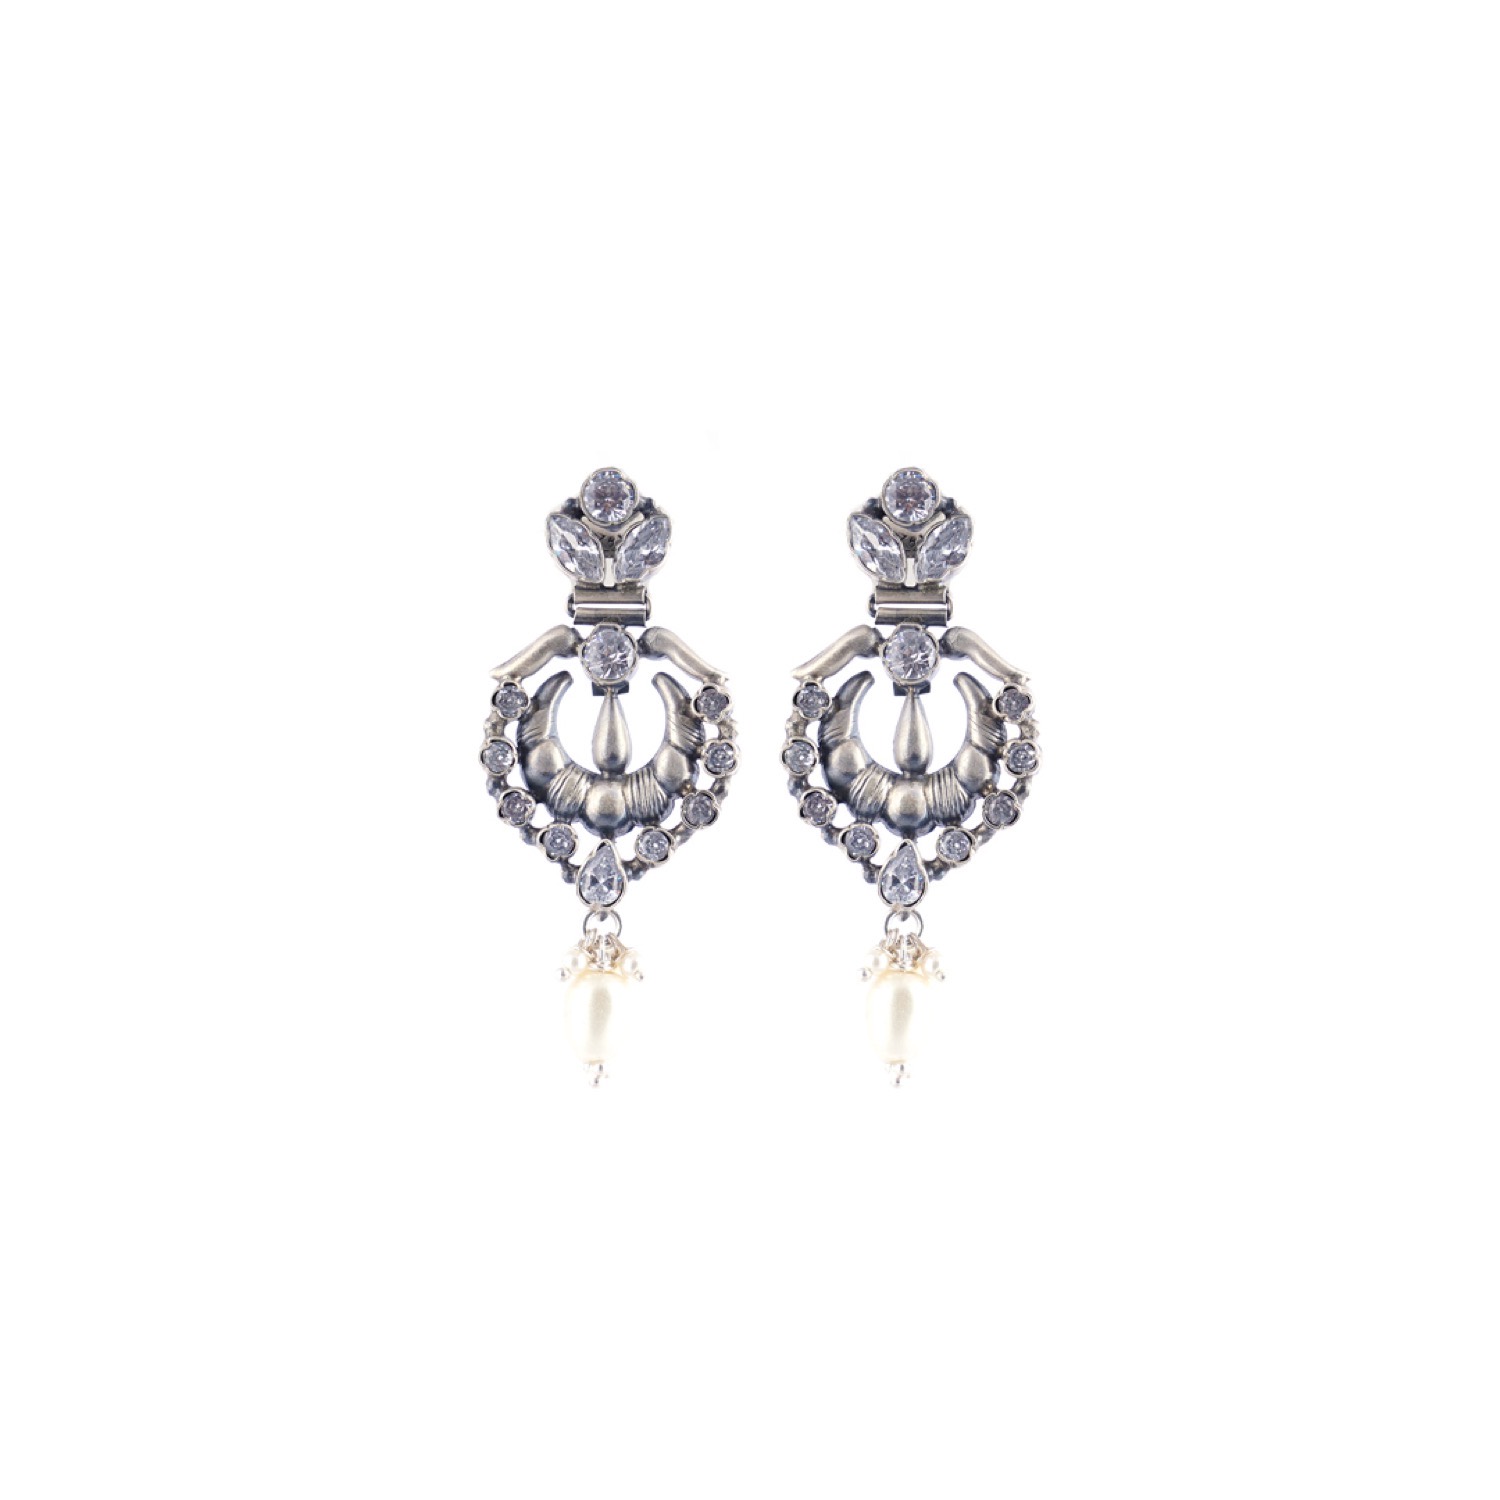 varam_earrings_102022_oxidised_white_stone_and_pearl_droping_silver_earrings-1